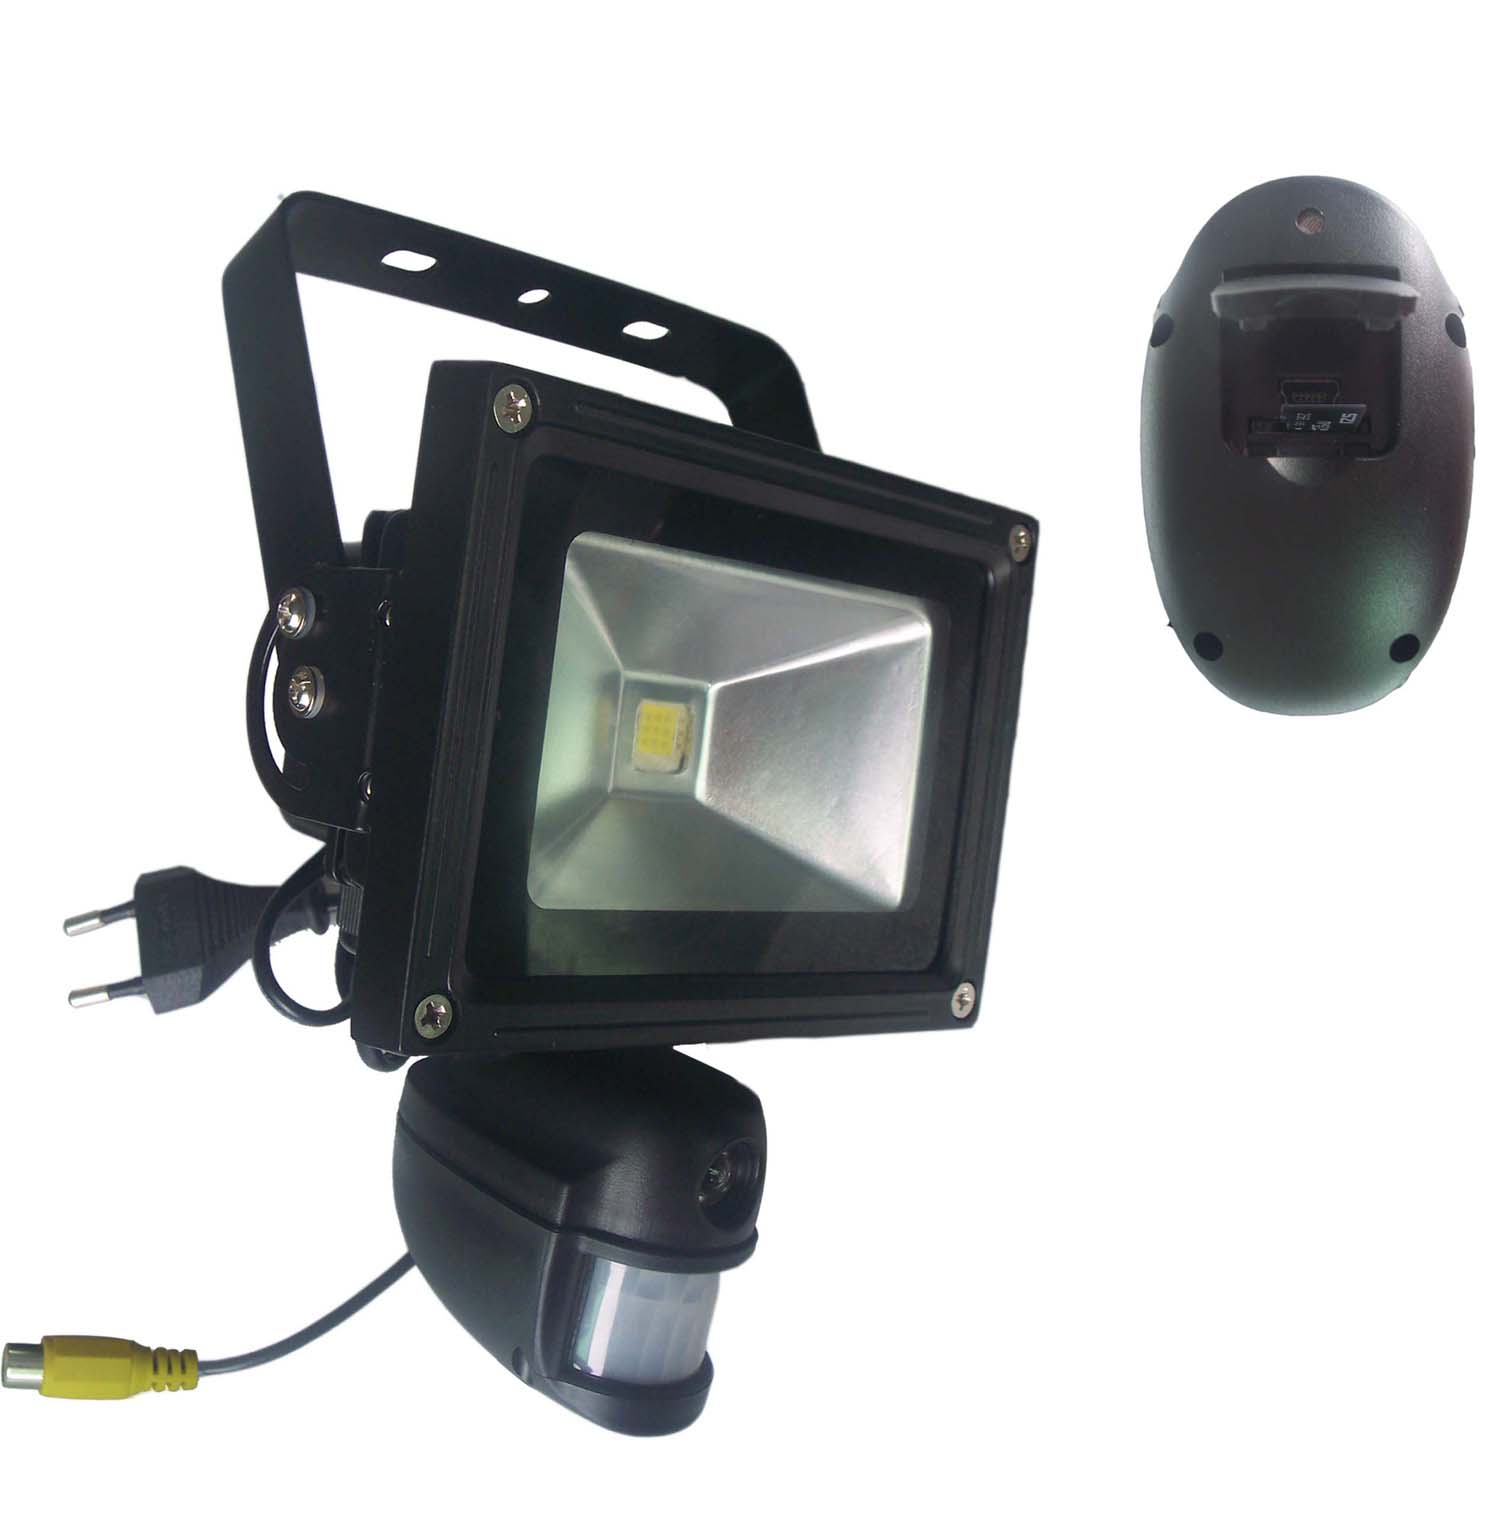 5.0 MP Waterproof Flood Light DVR w/Motion Activated / AV